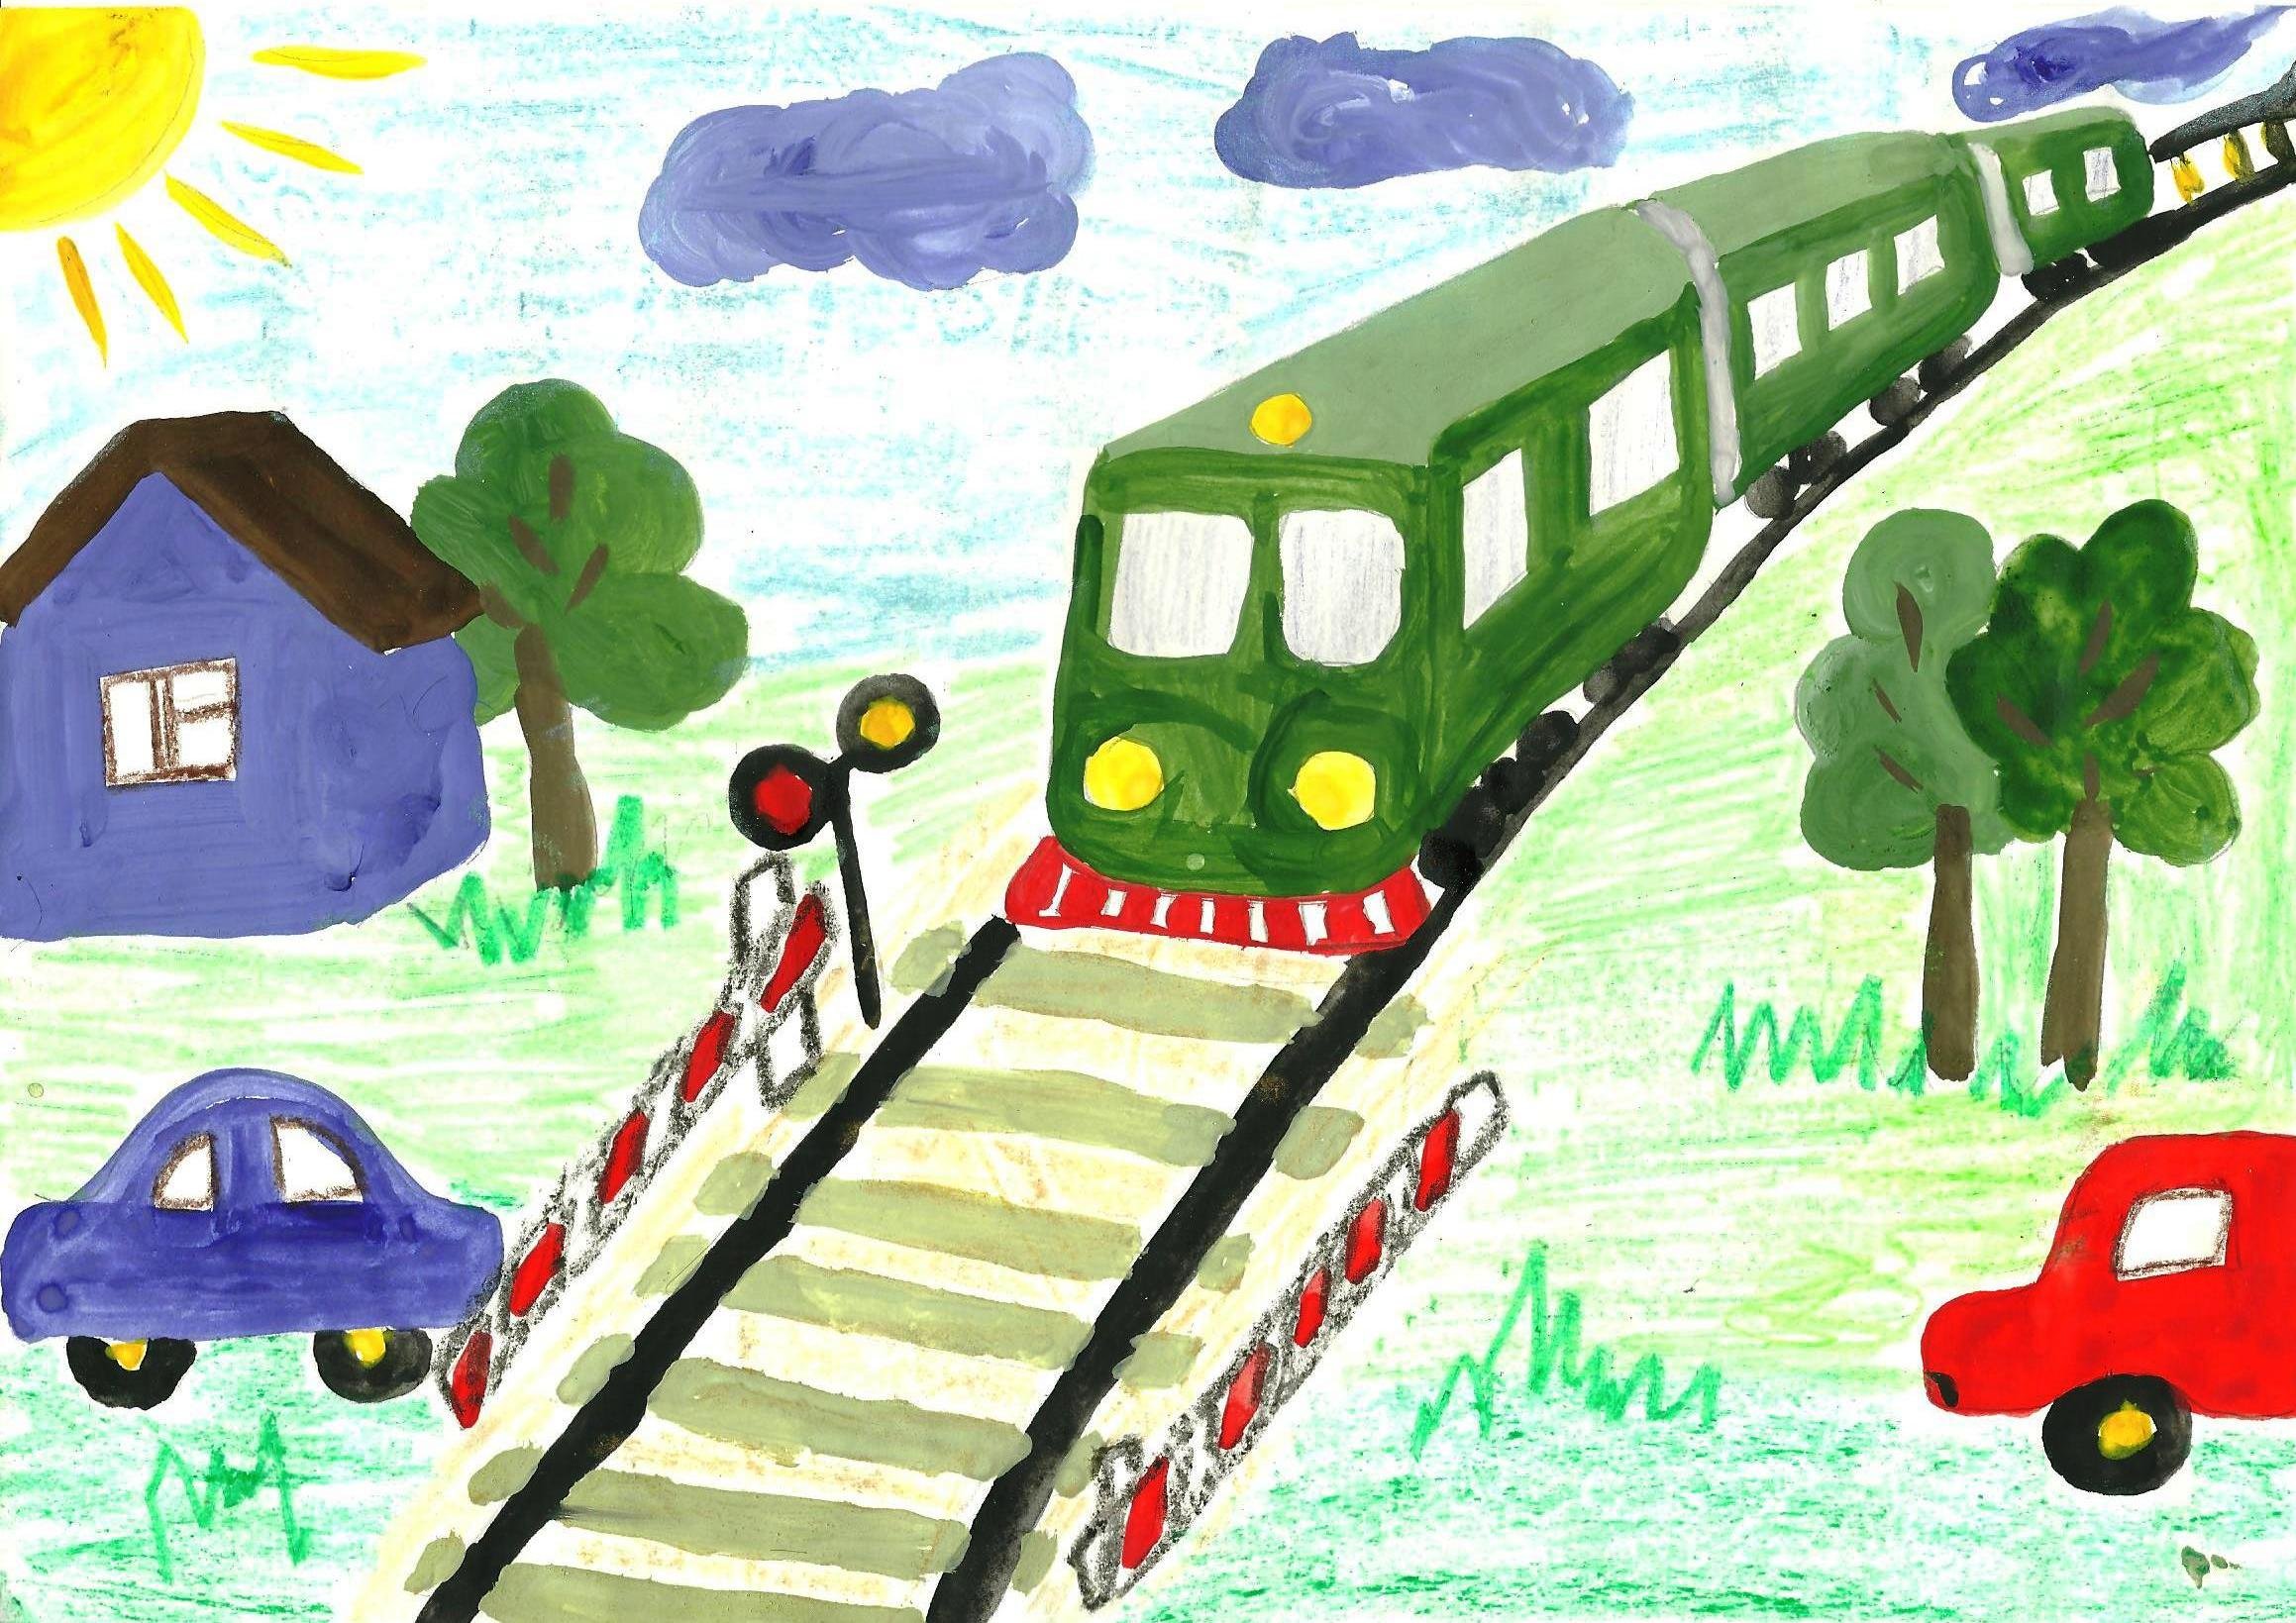 Как нарисовать игрушечную железную дорогу